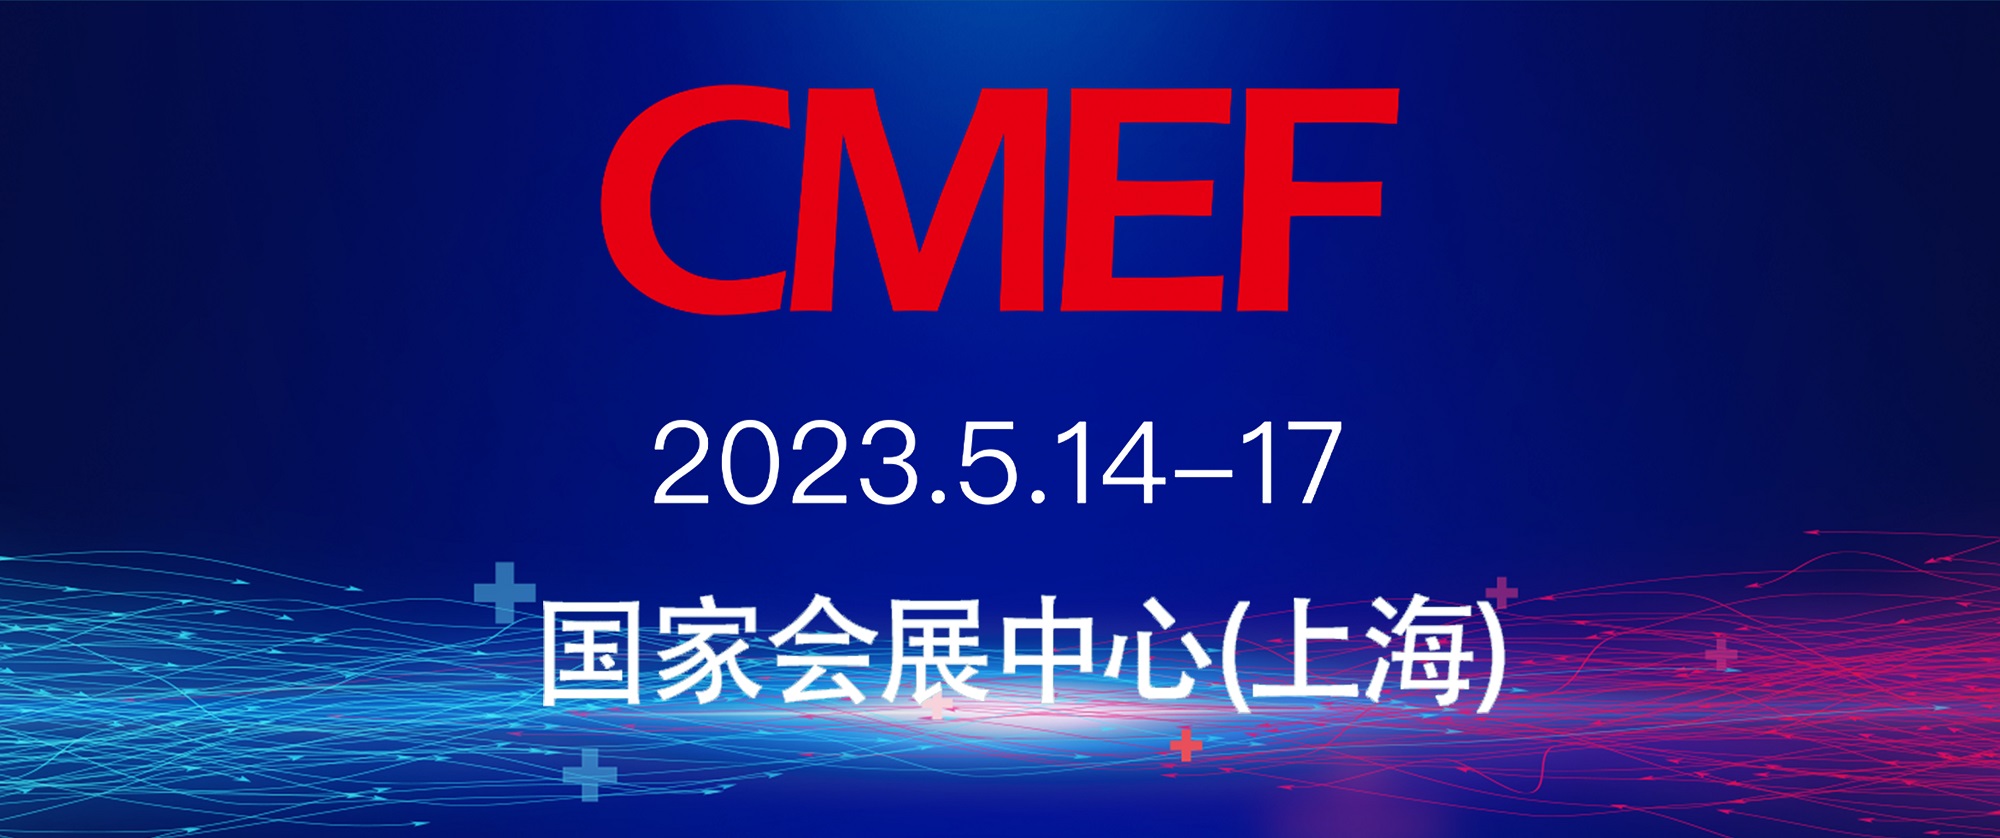 五月如期归来，江苏瑞力博第87届CMEF邀请您的到来！